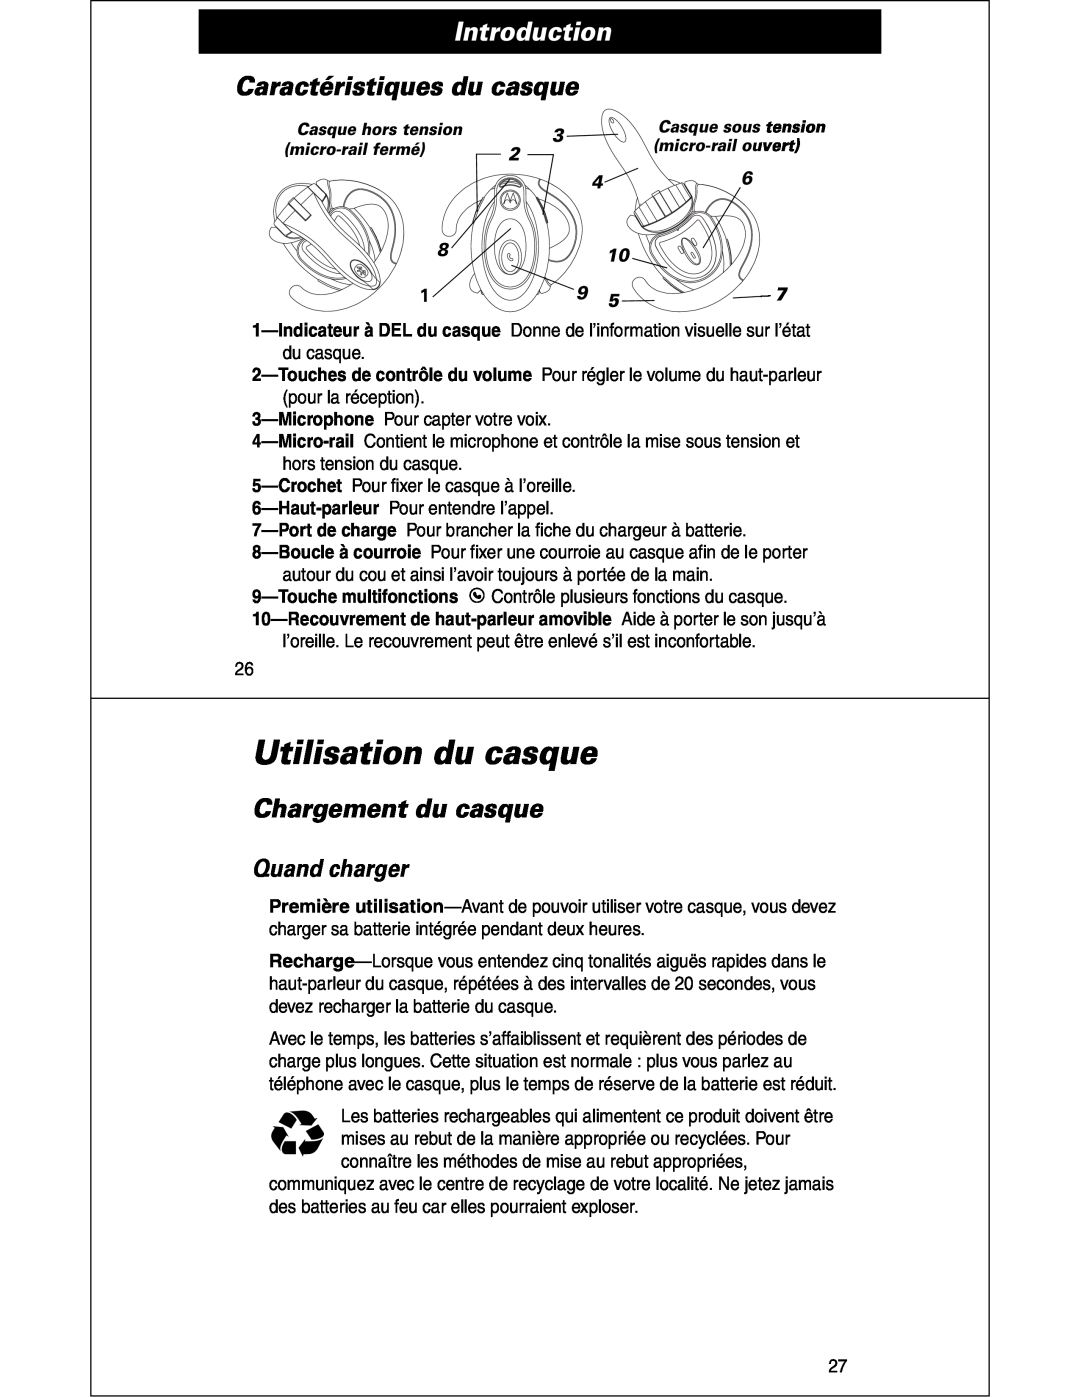 Motorola HS810 manual Utilisation du casque, Caractéristiques du casque, Chargement du casque, Quand charger, Introduction 